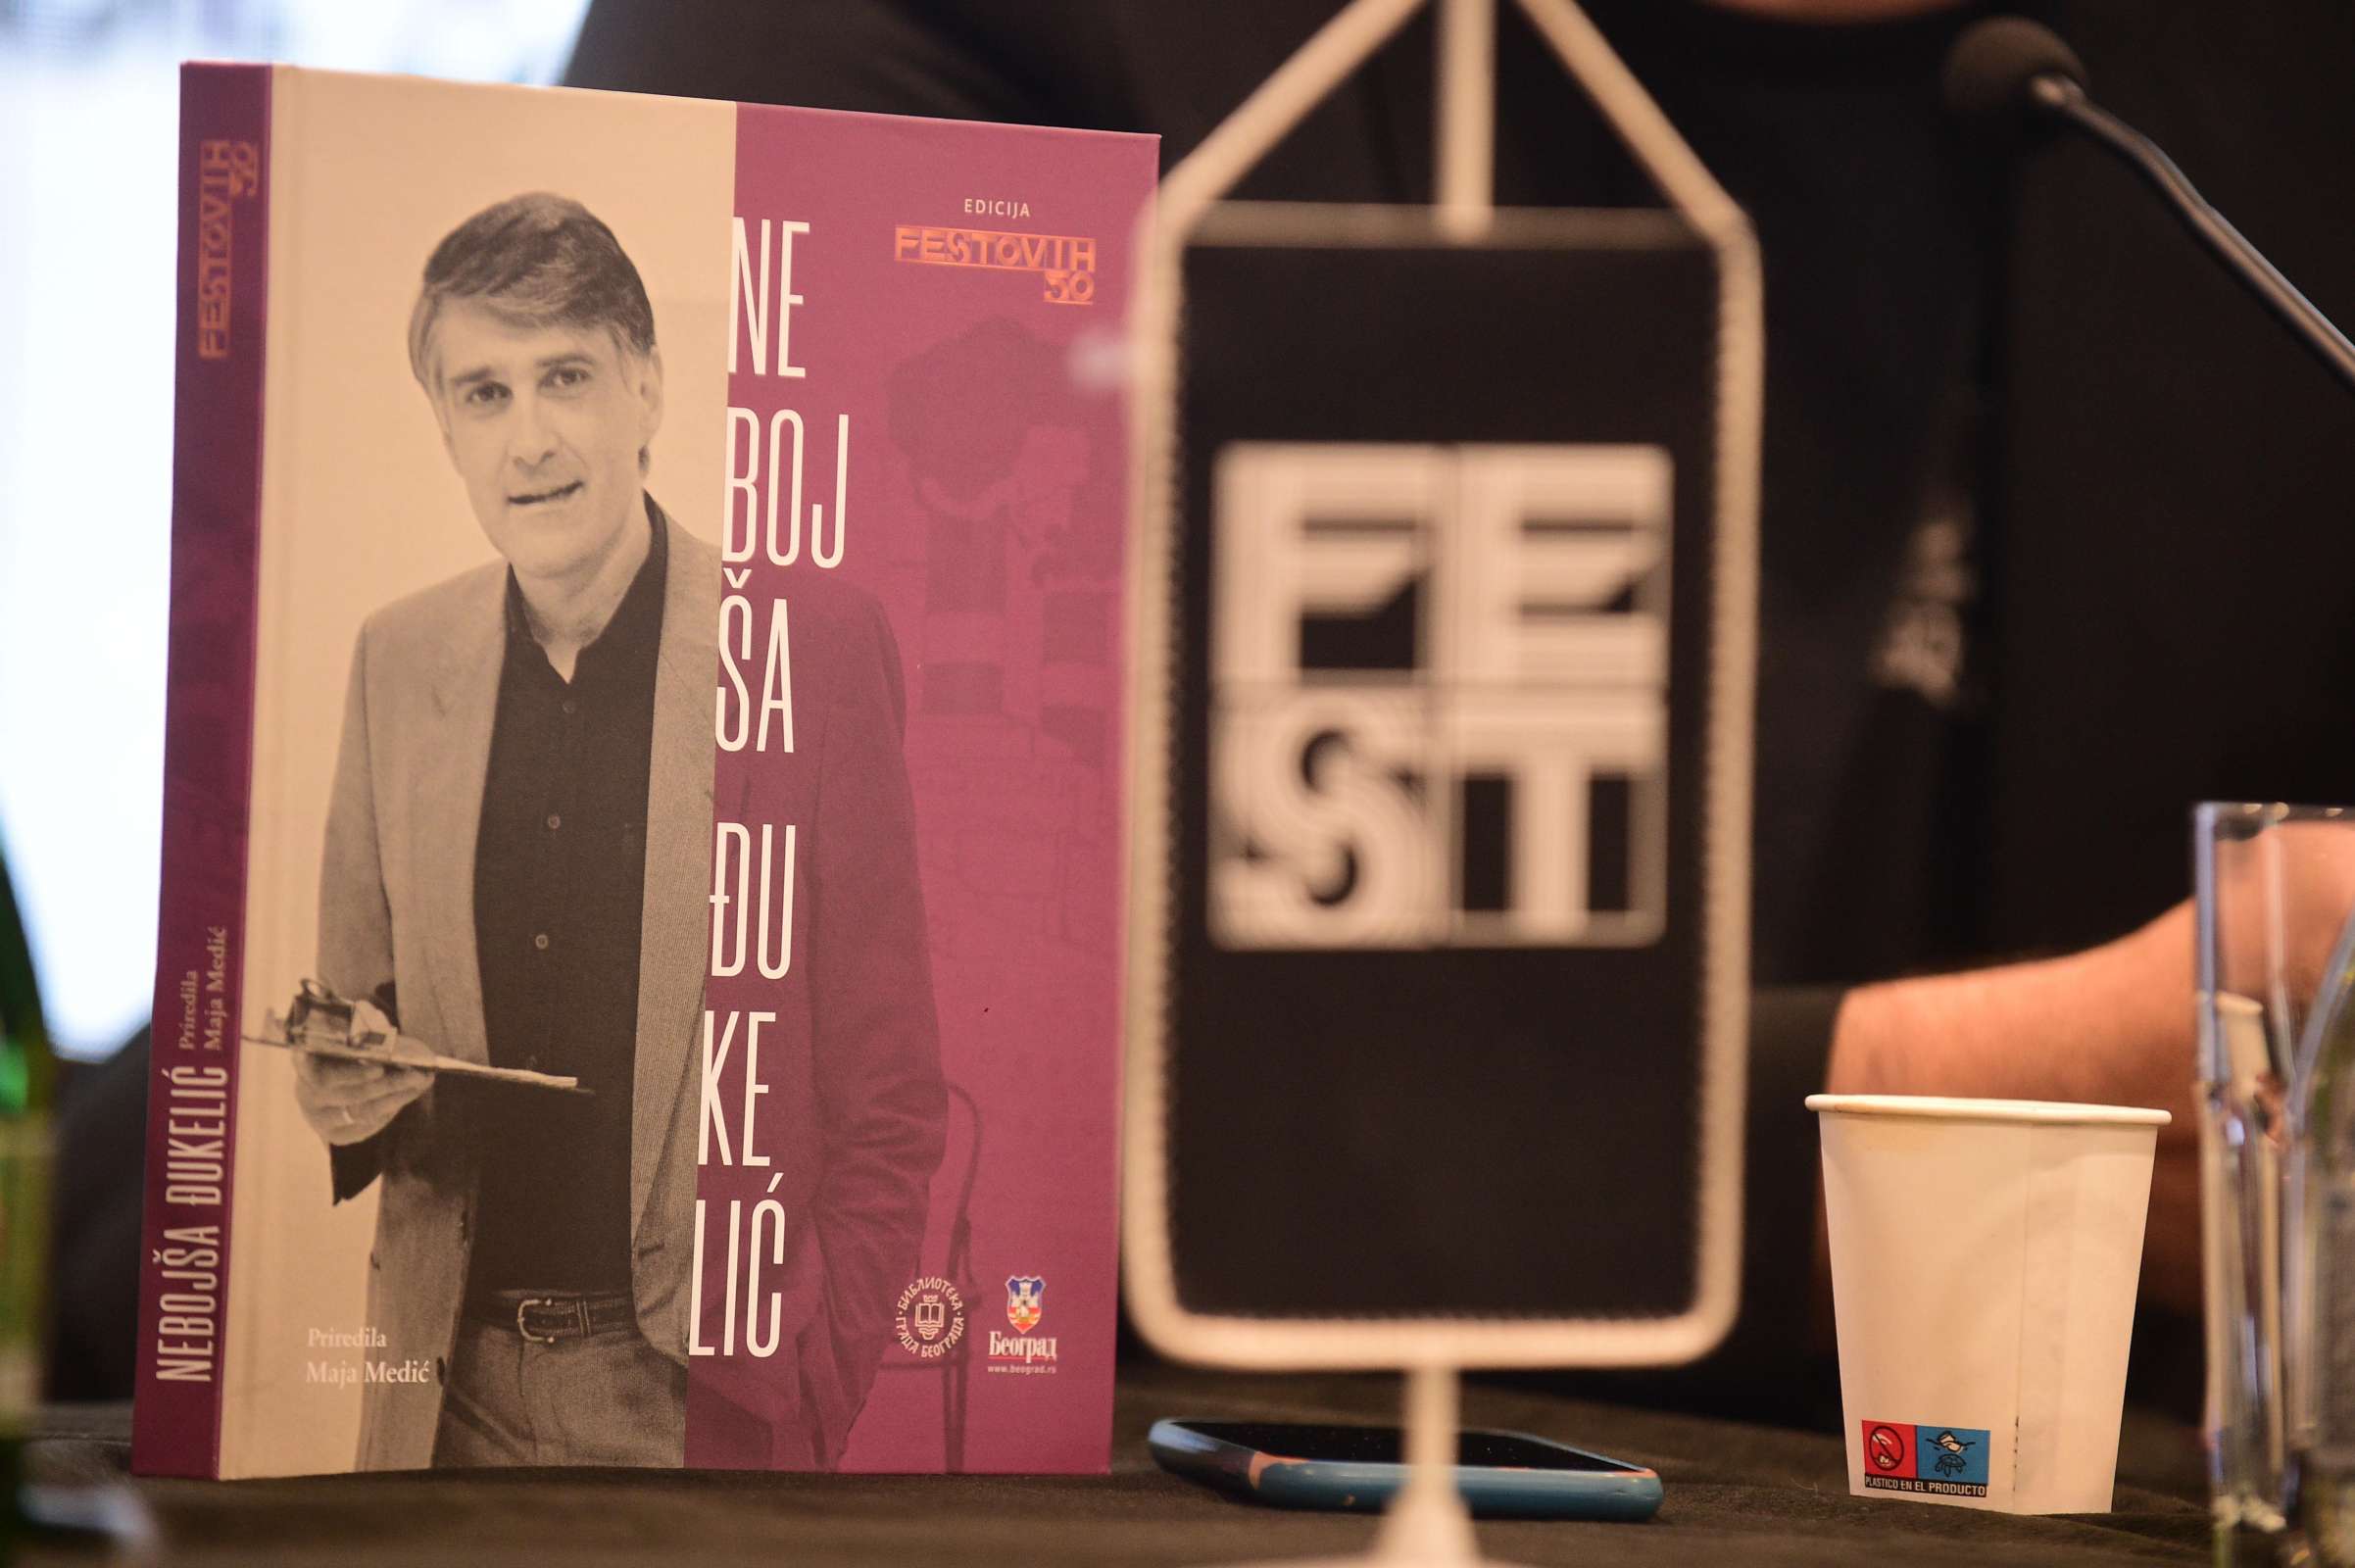 Predstavljena knjiga "Nebojša Đukelić" iz edicije Festovih 50